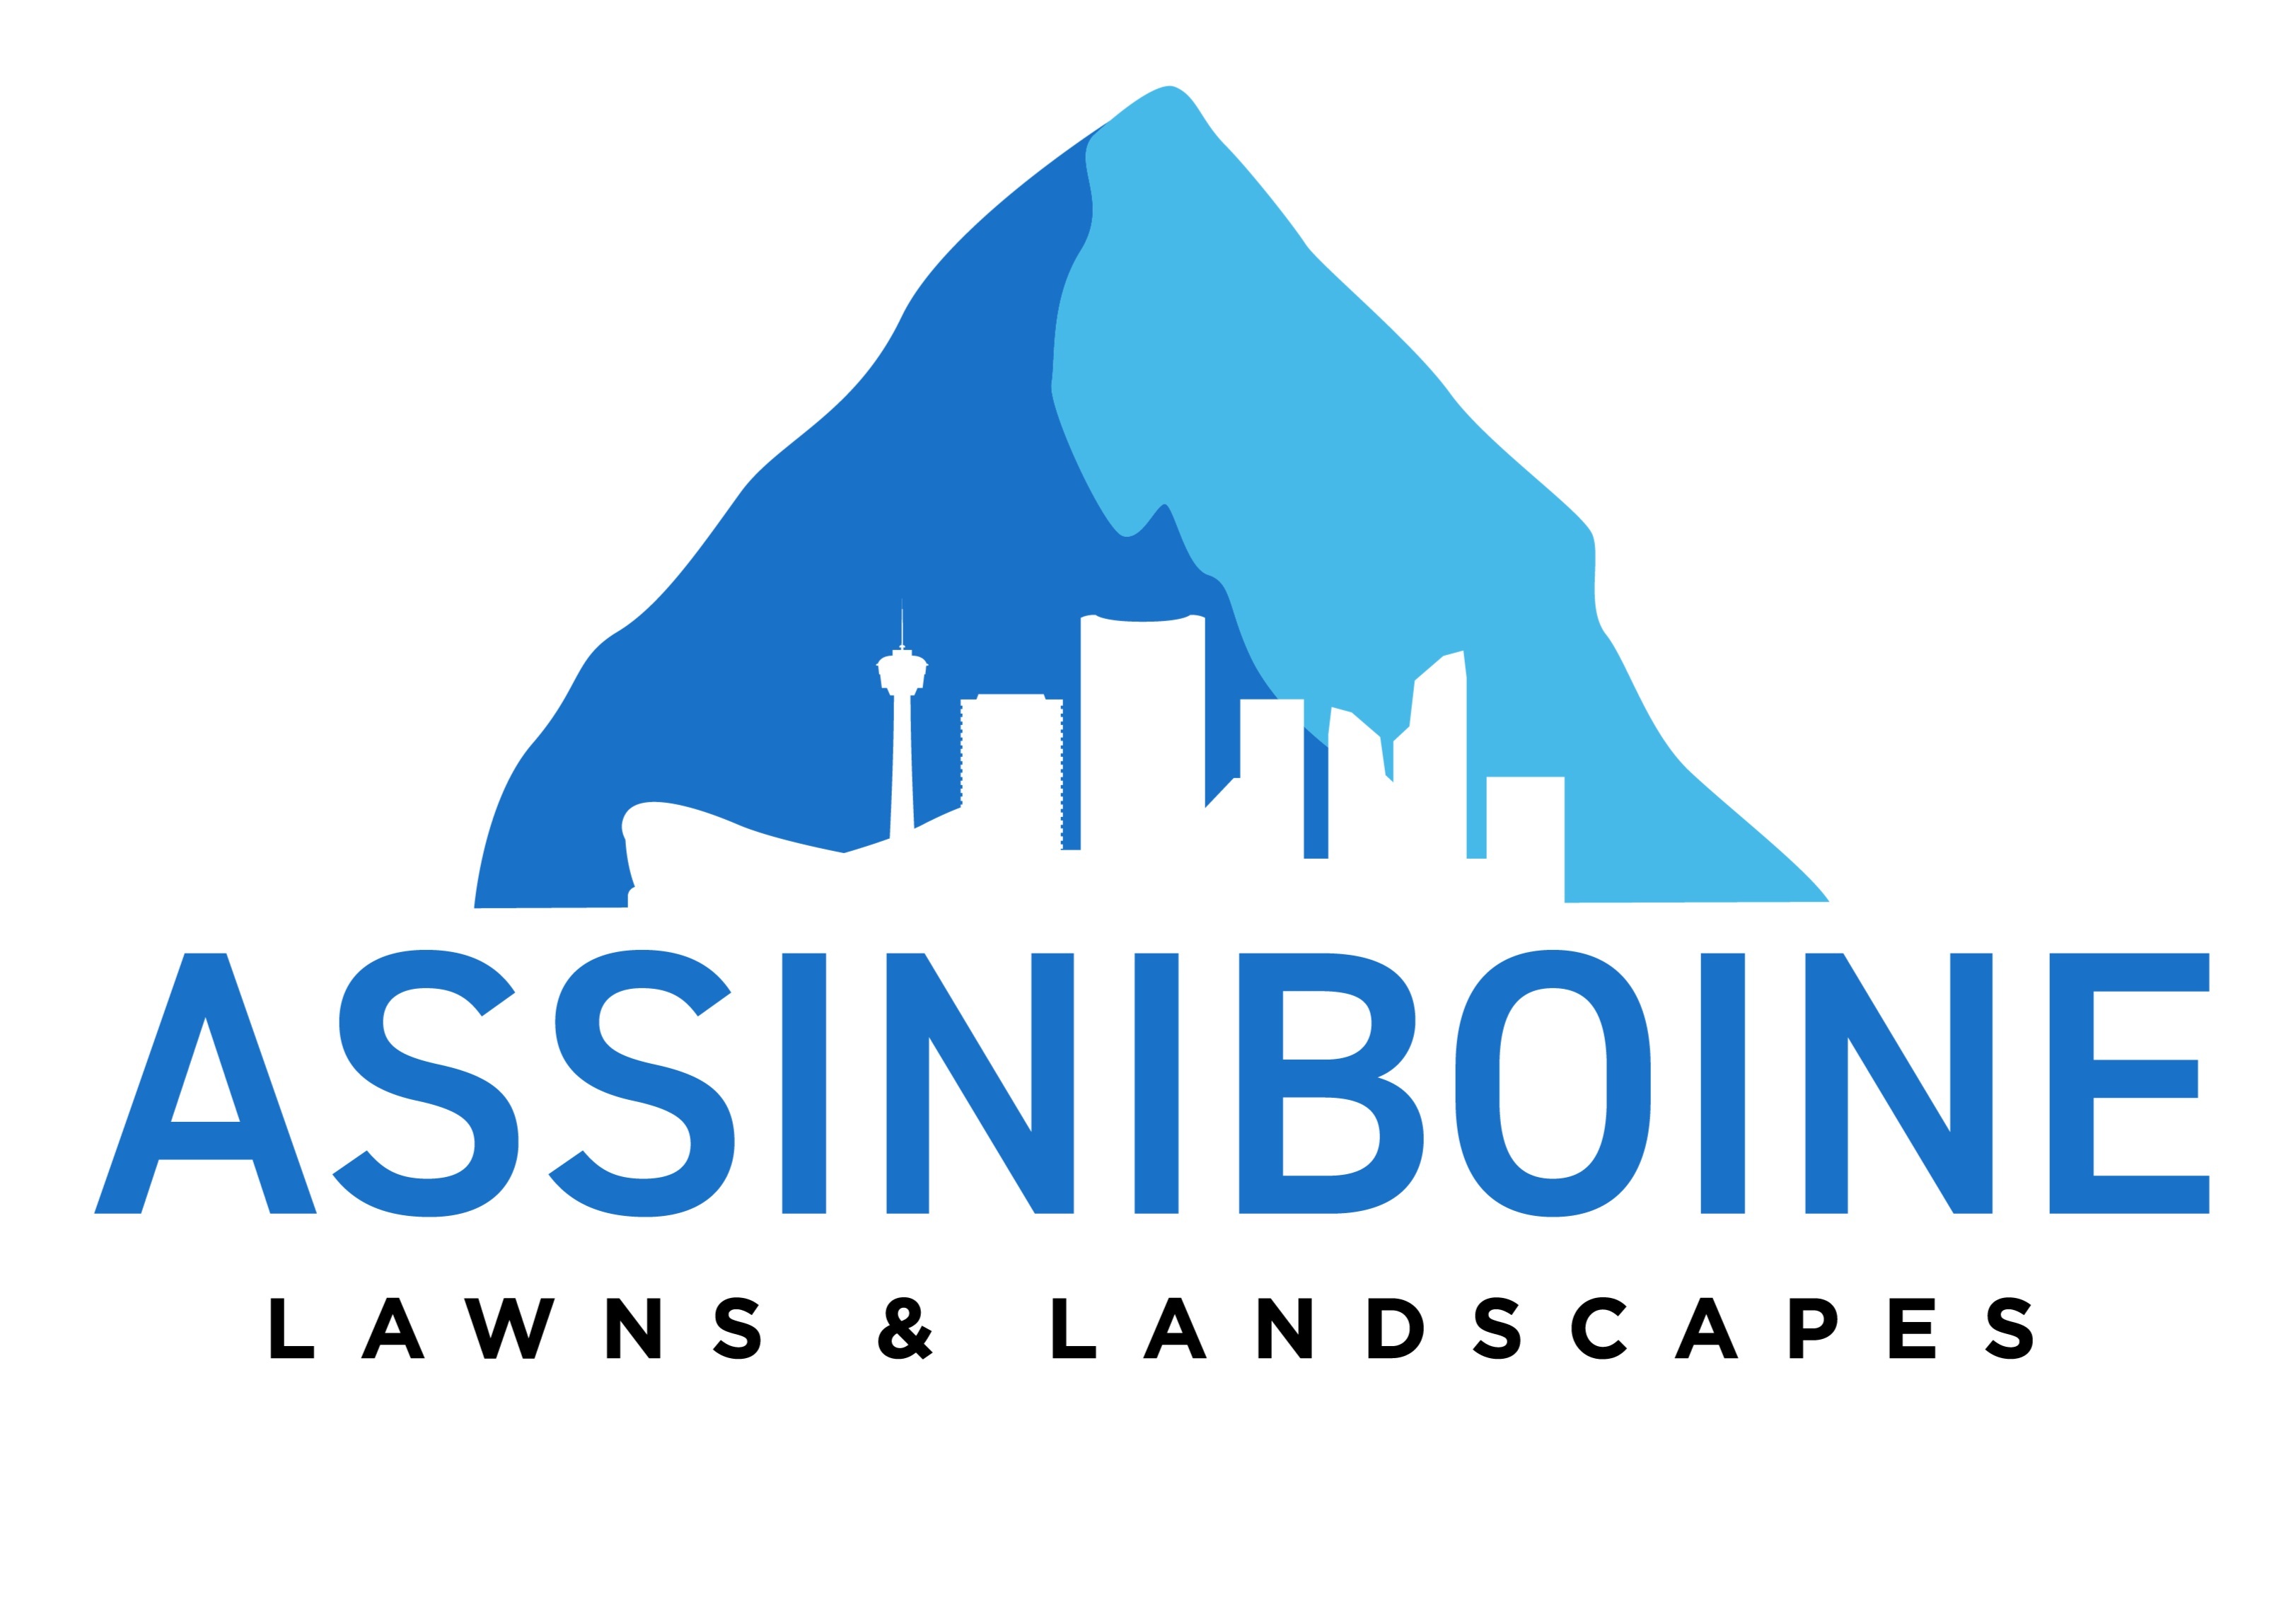 Assiniboine Lawns & Landscapes's logo